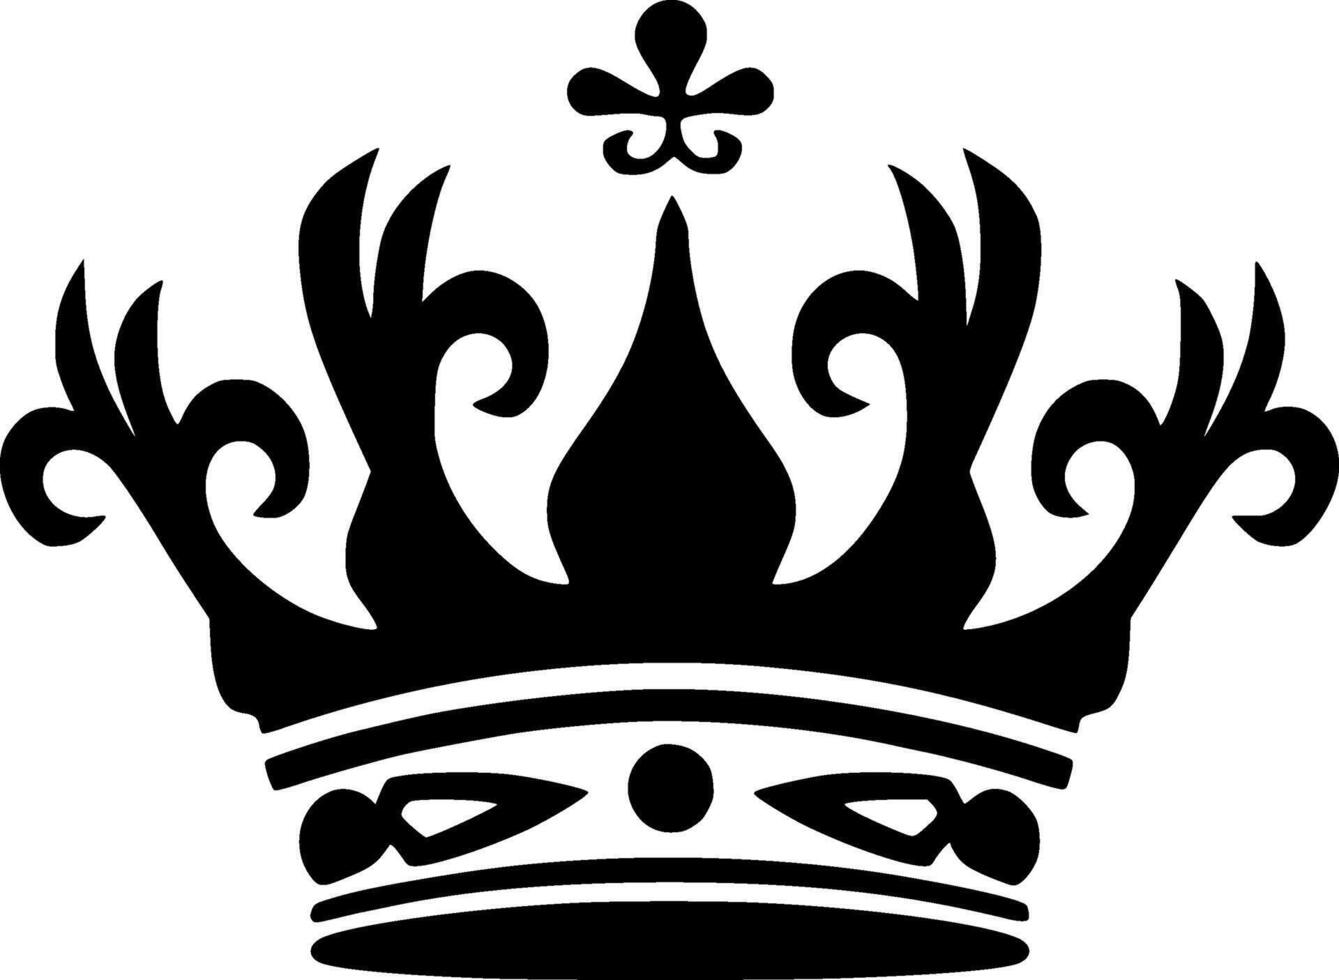 kroon - minimalistische en vlak logo - vector illustratie